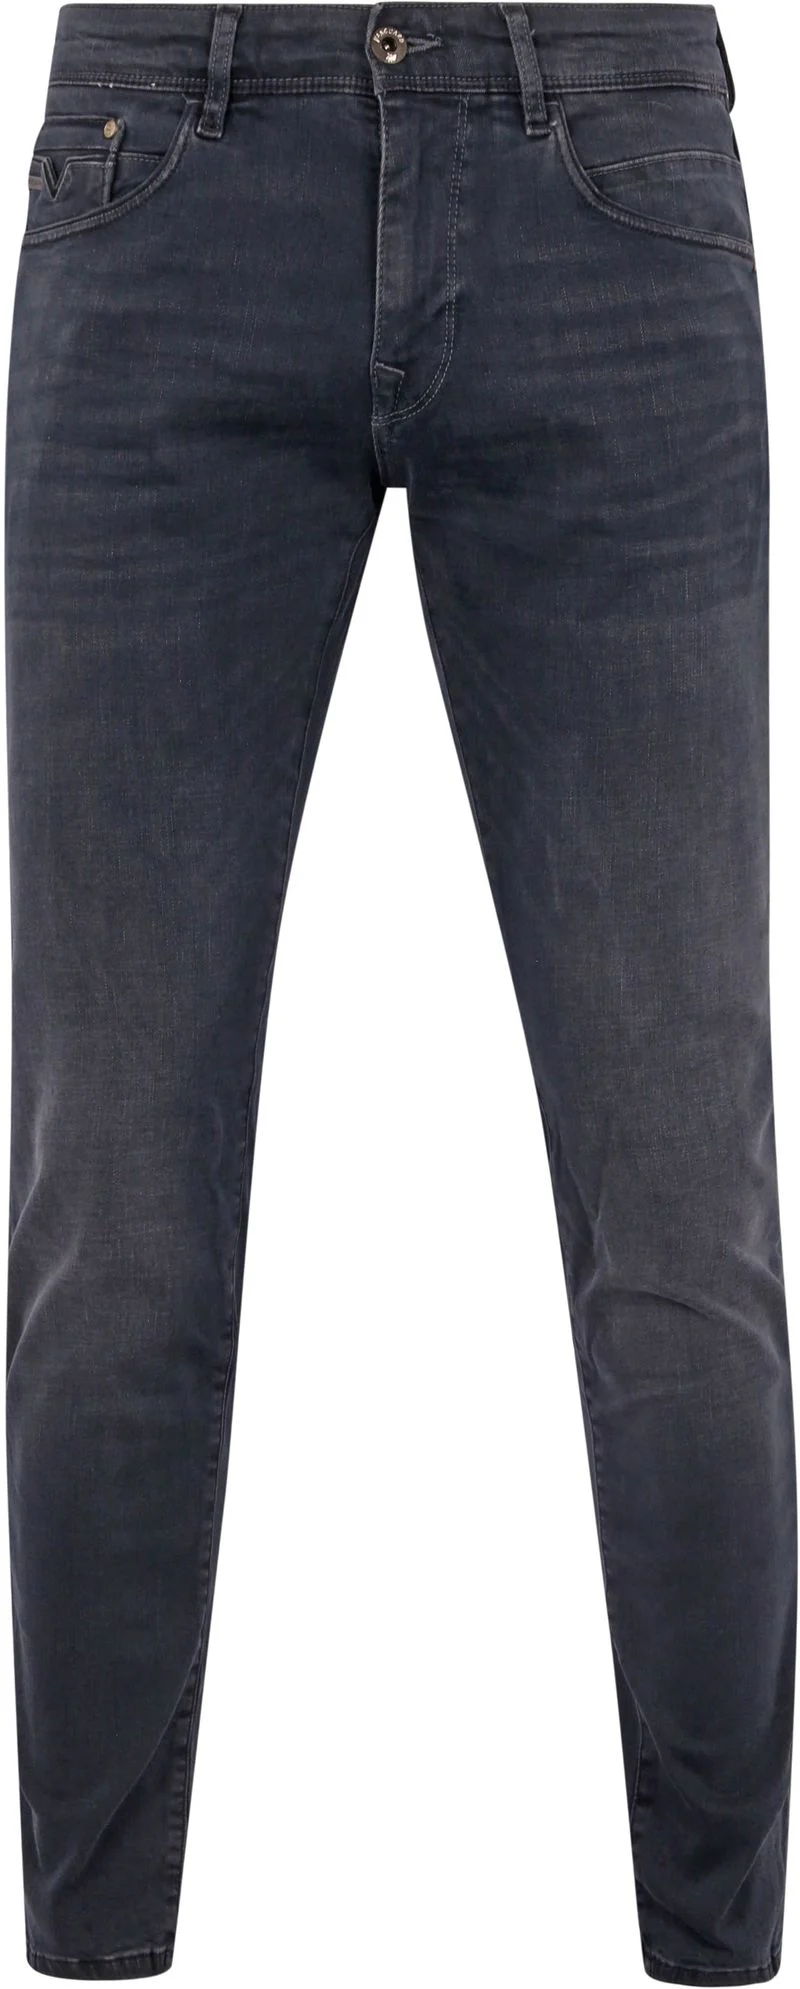 Vanguard Jeans V12 Rider Anthrazit ODB - Größe W 31 - L 32 günstig online kaufen